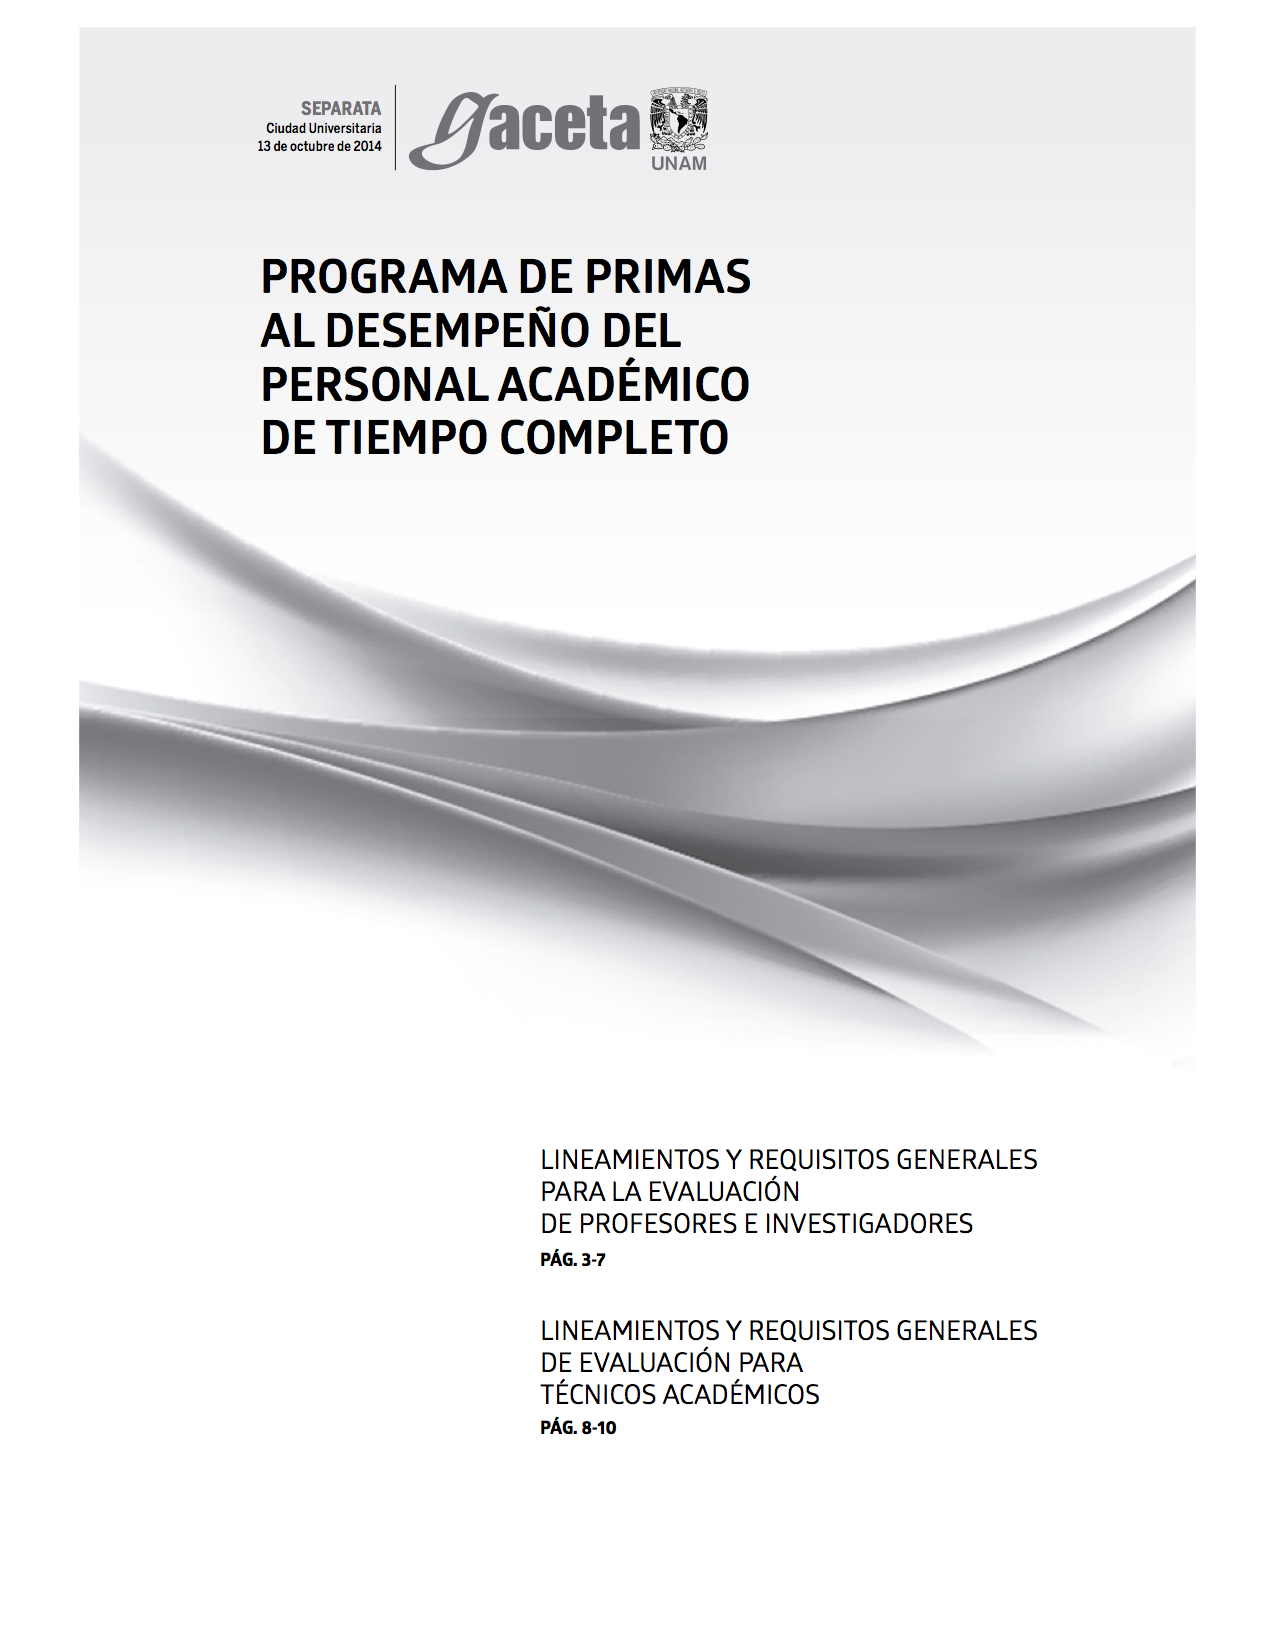 Evaluación del Personal Académico de la UNAM